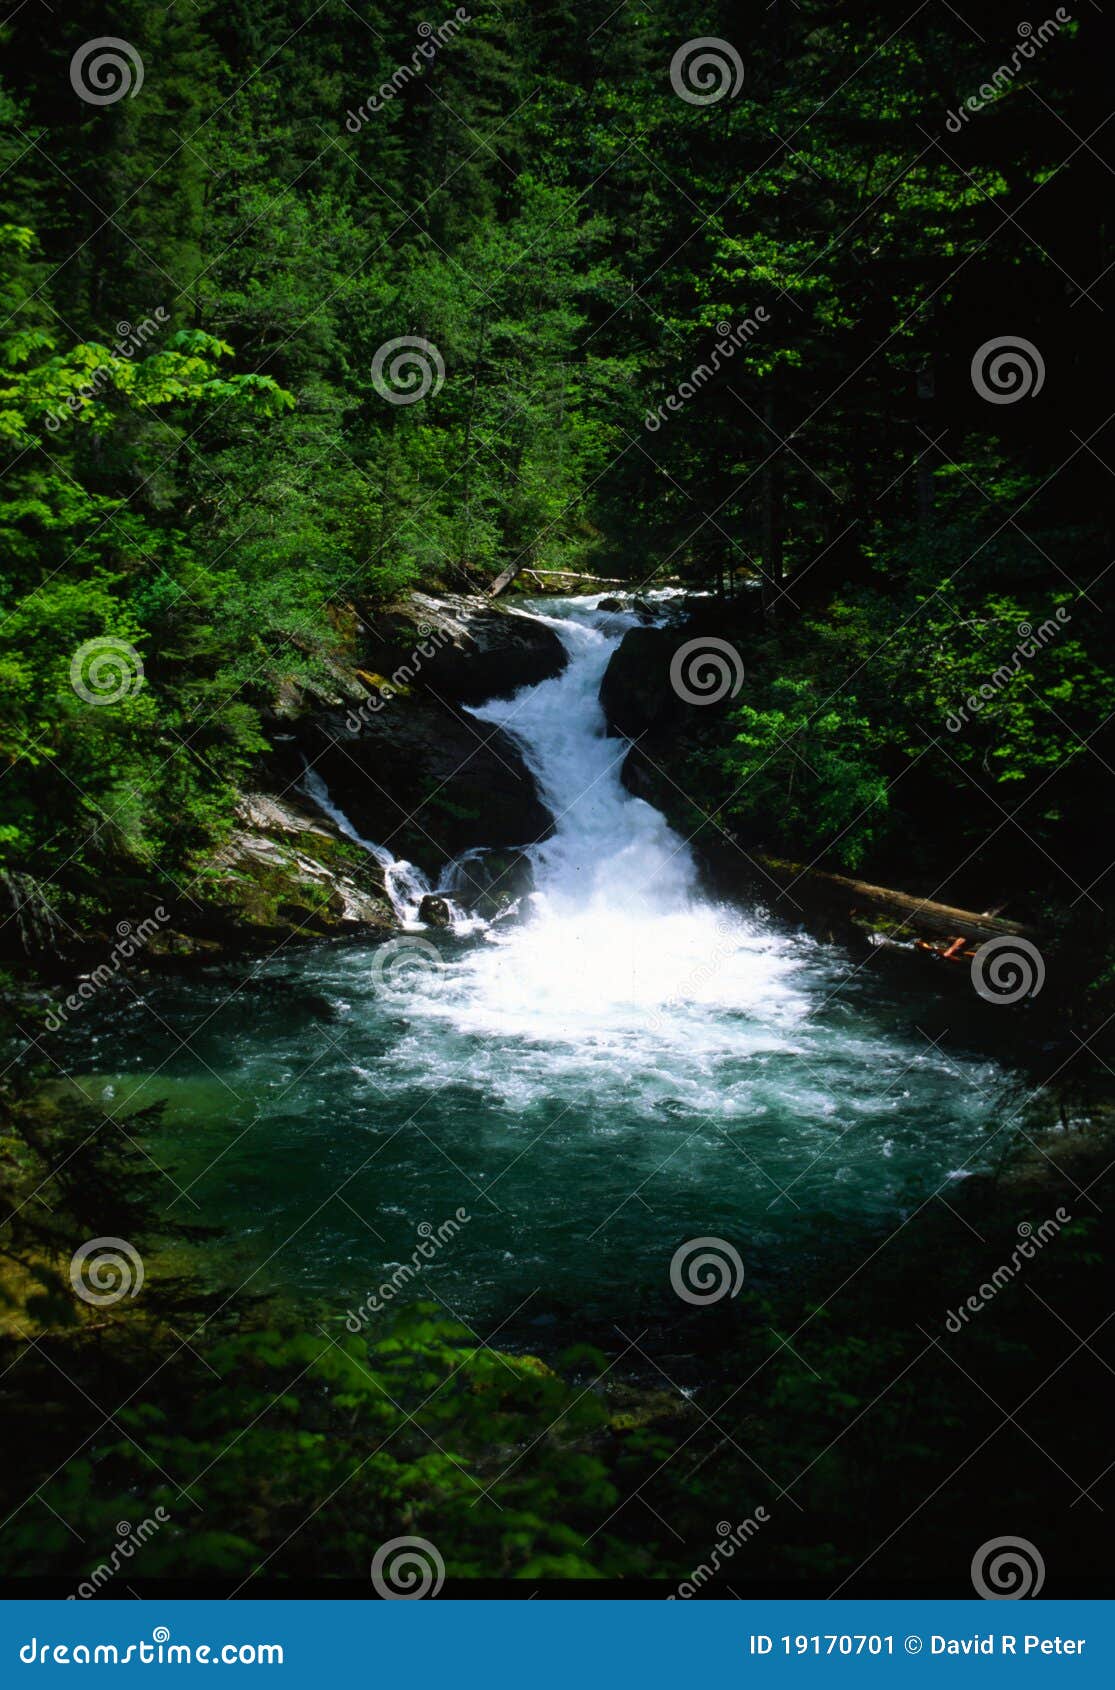 lewis river falls washington